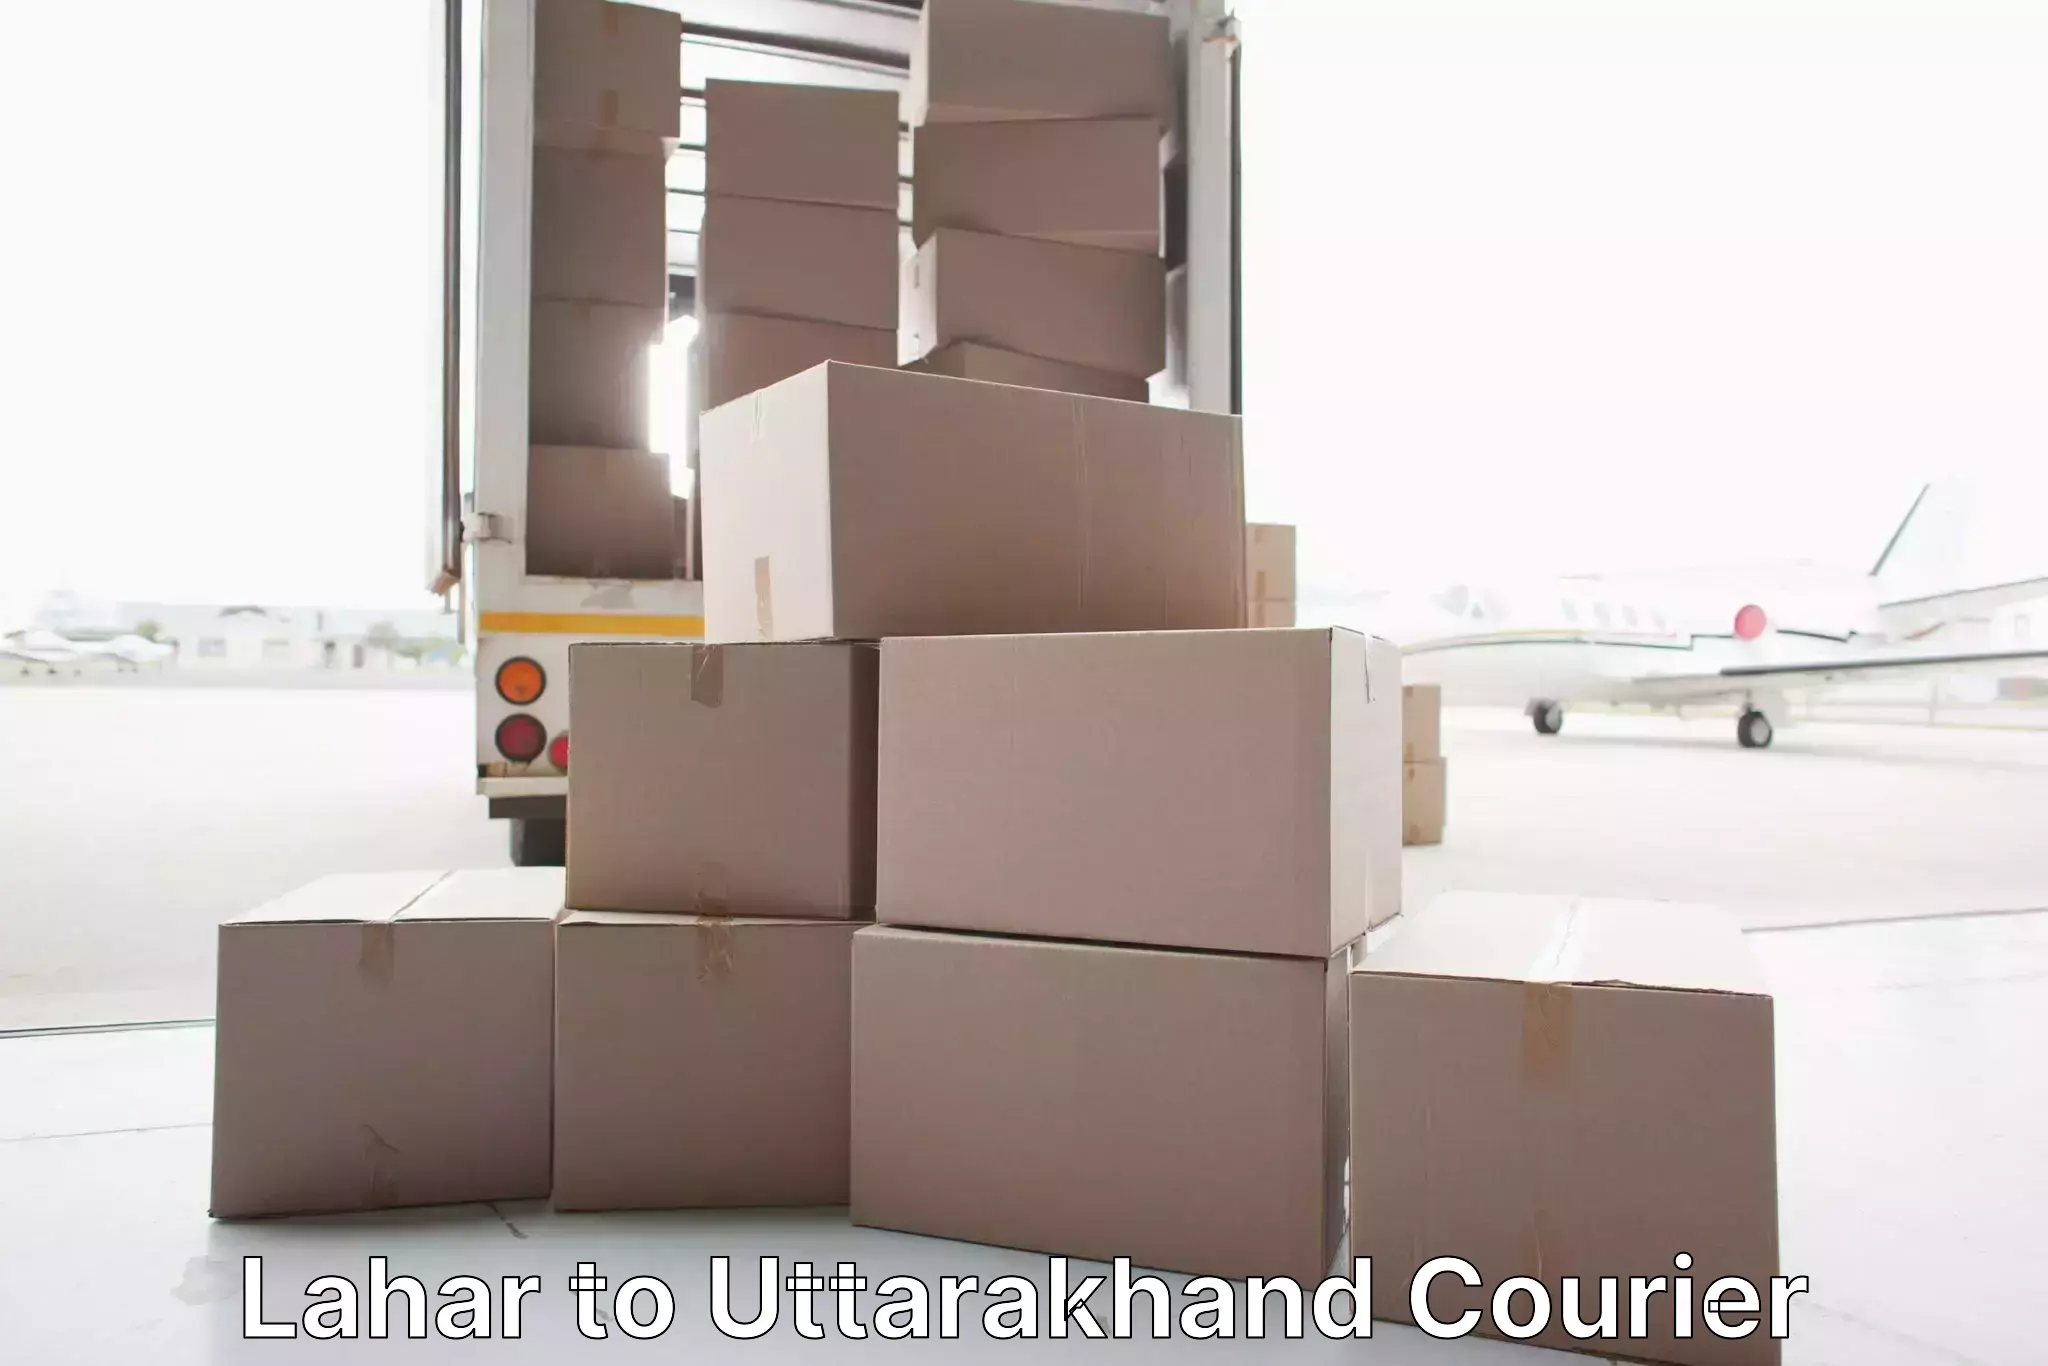 Furniture moving experts Lahar to Kashipur